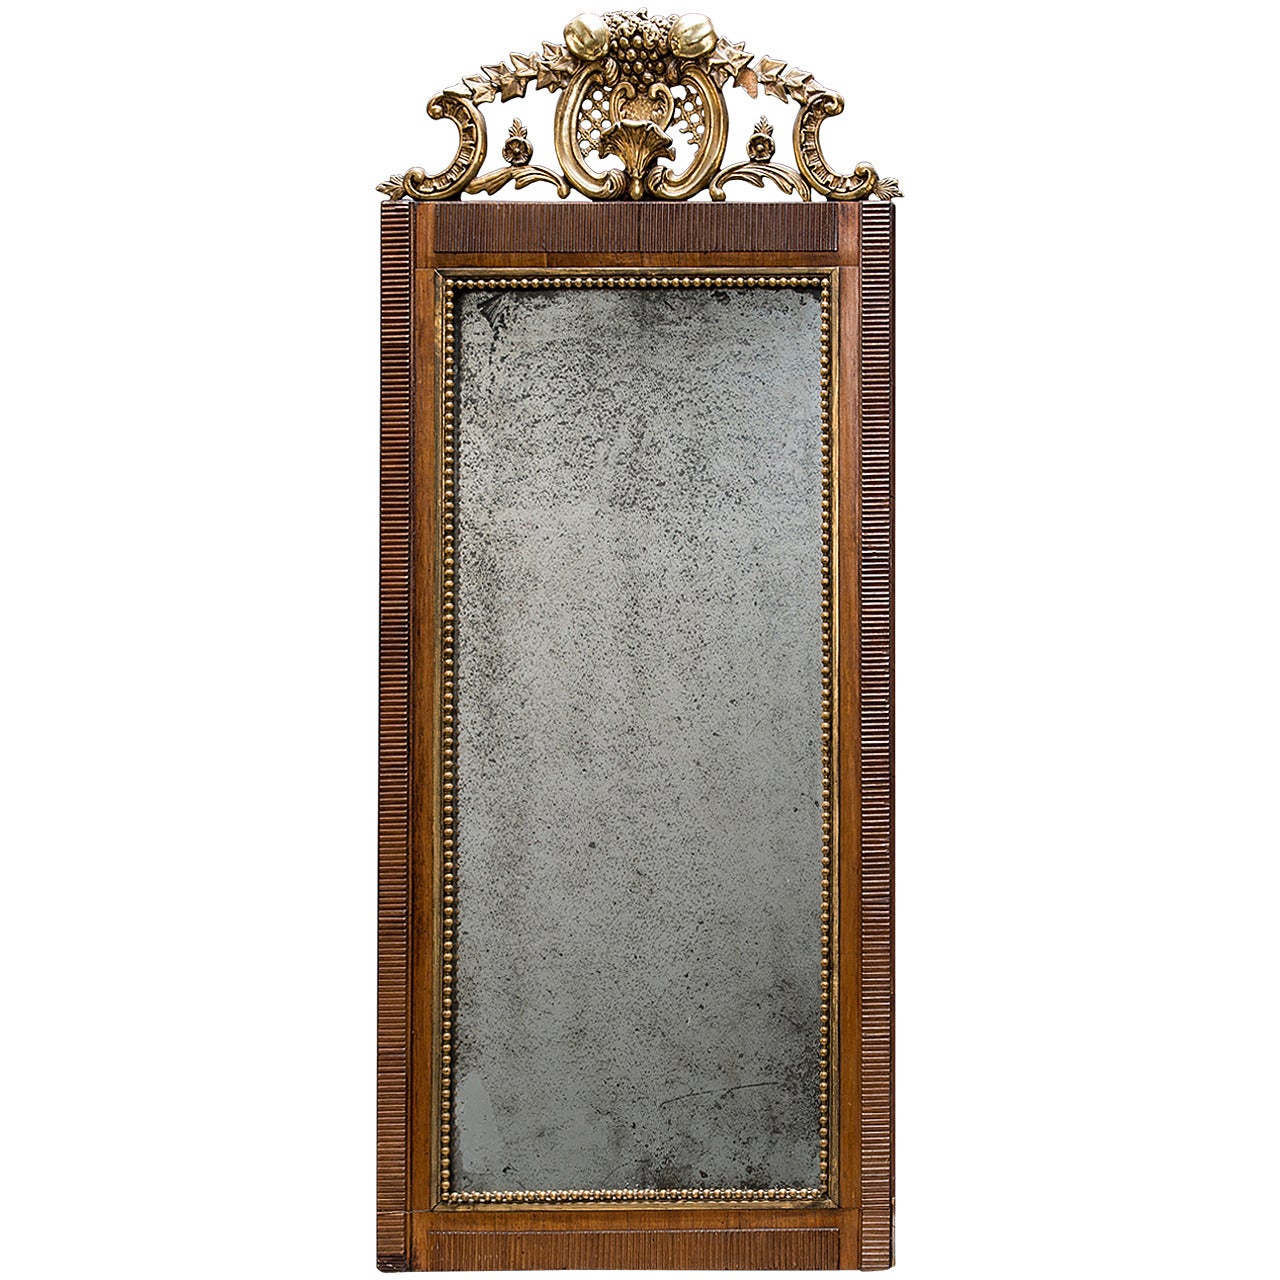 Spiegel im Louis-XVI-Stil, Frankreich, Ende 18. Jahrhundert